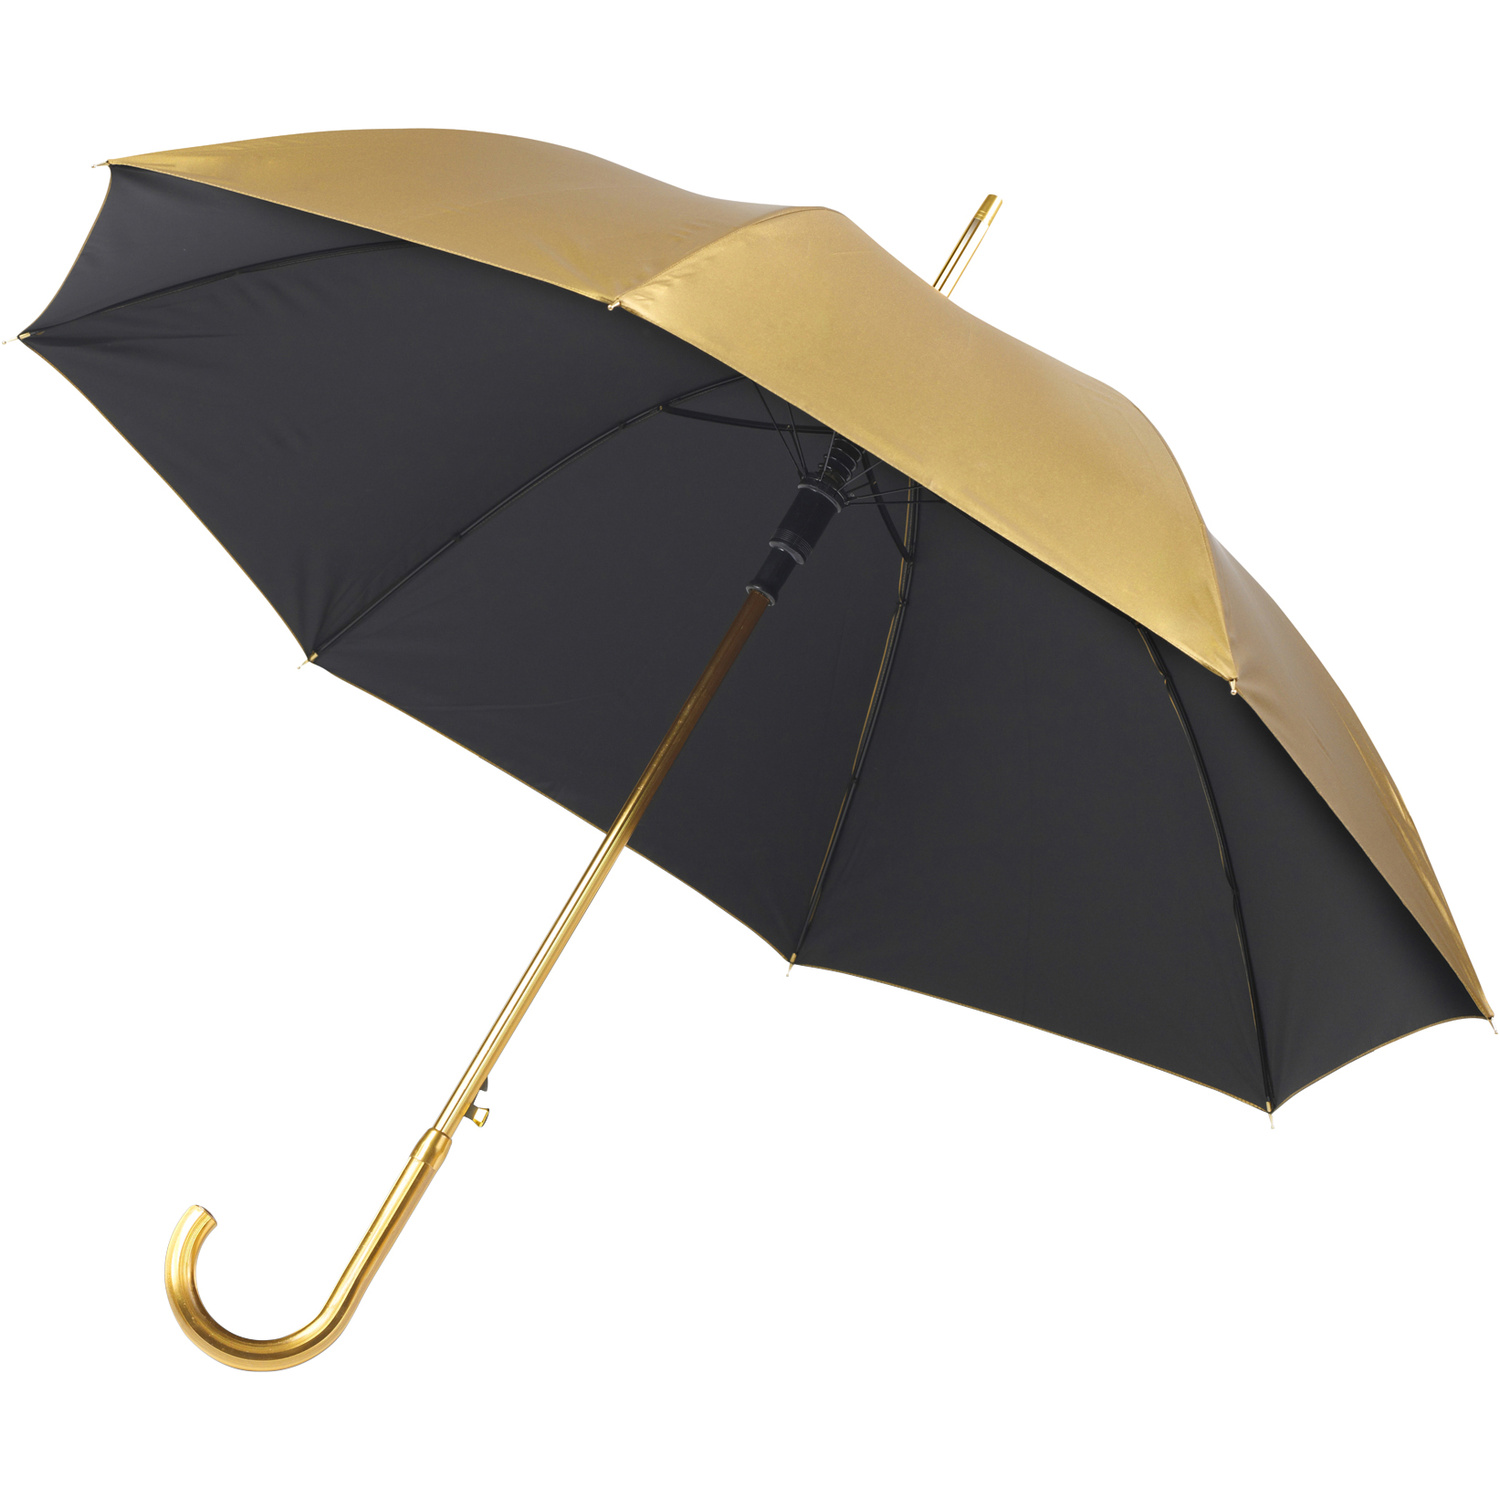 004123 031999999 3d045 ins pro01 fal - Double canopy umbrella